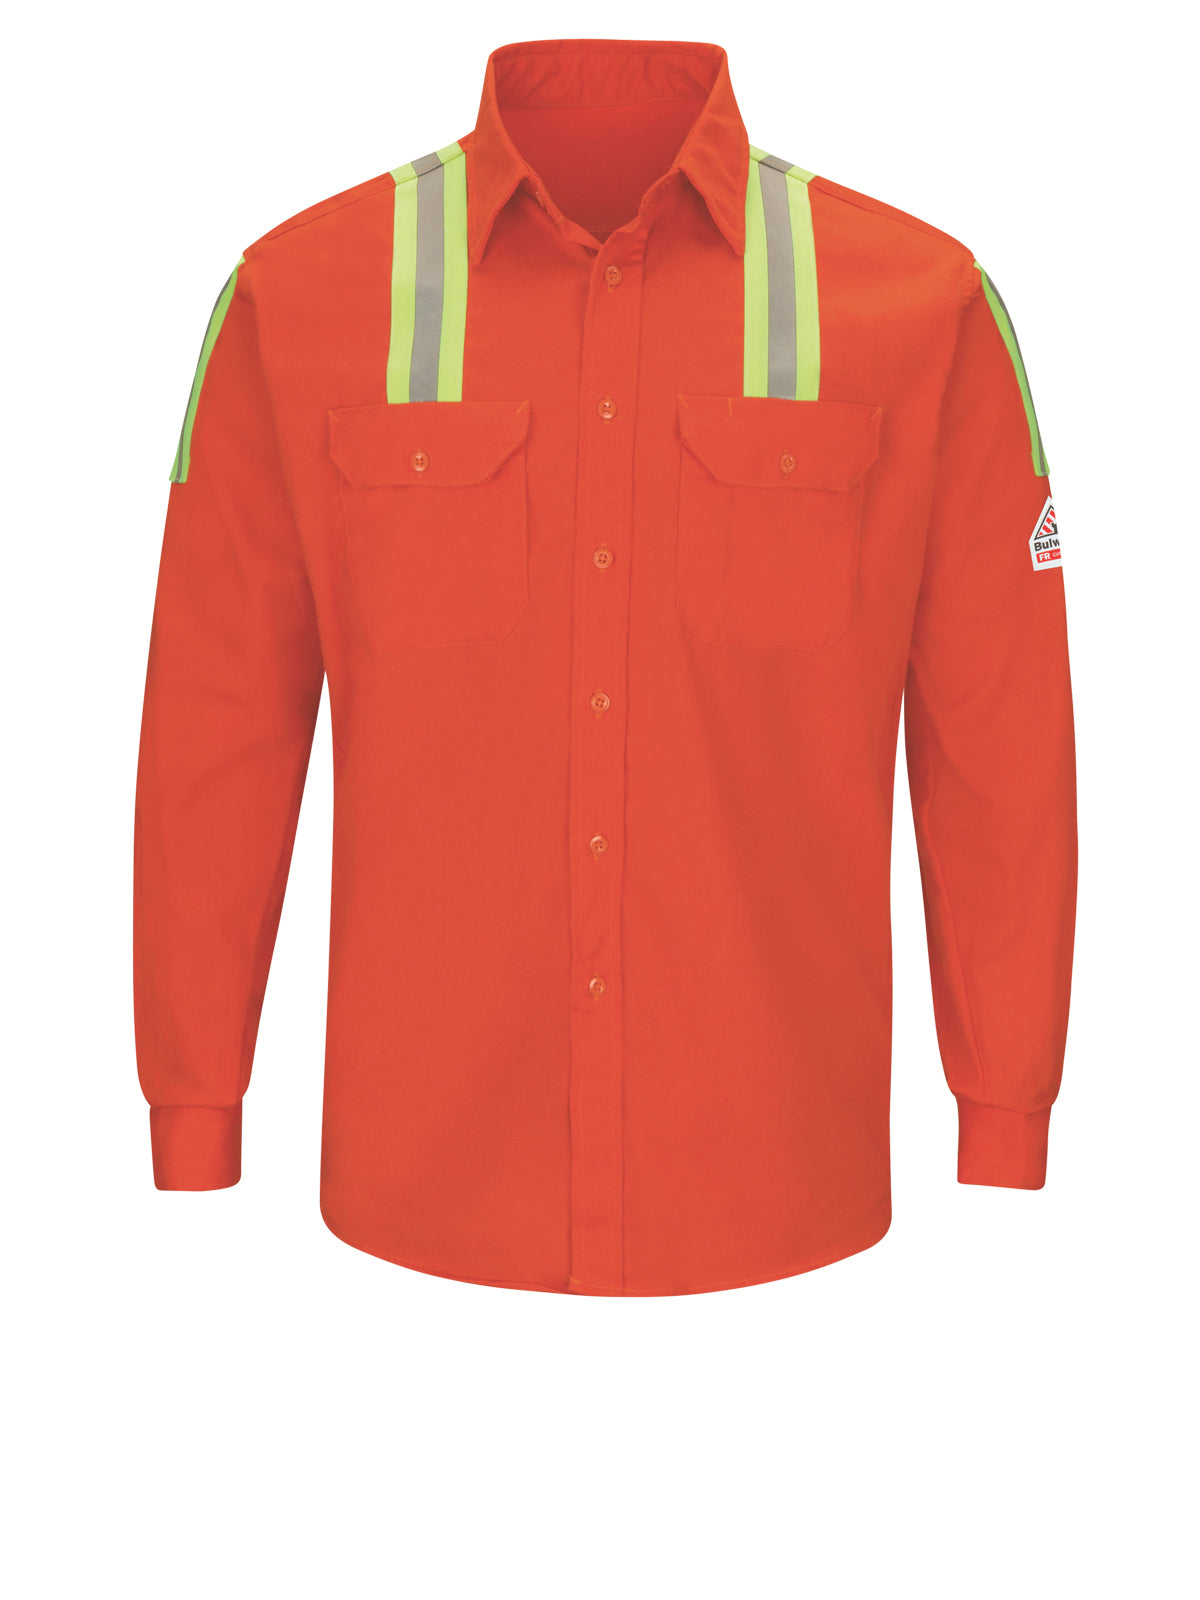 Men's 7Oz Excel Flame-Resistant Hi-Visibility Work Shirt - SLAT - Orange